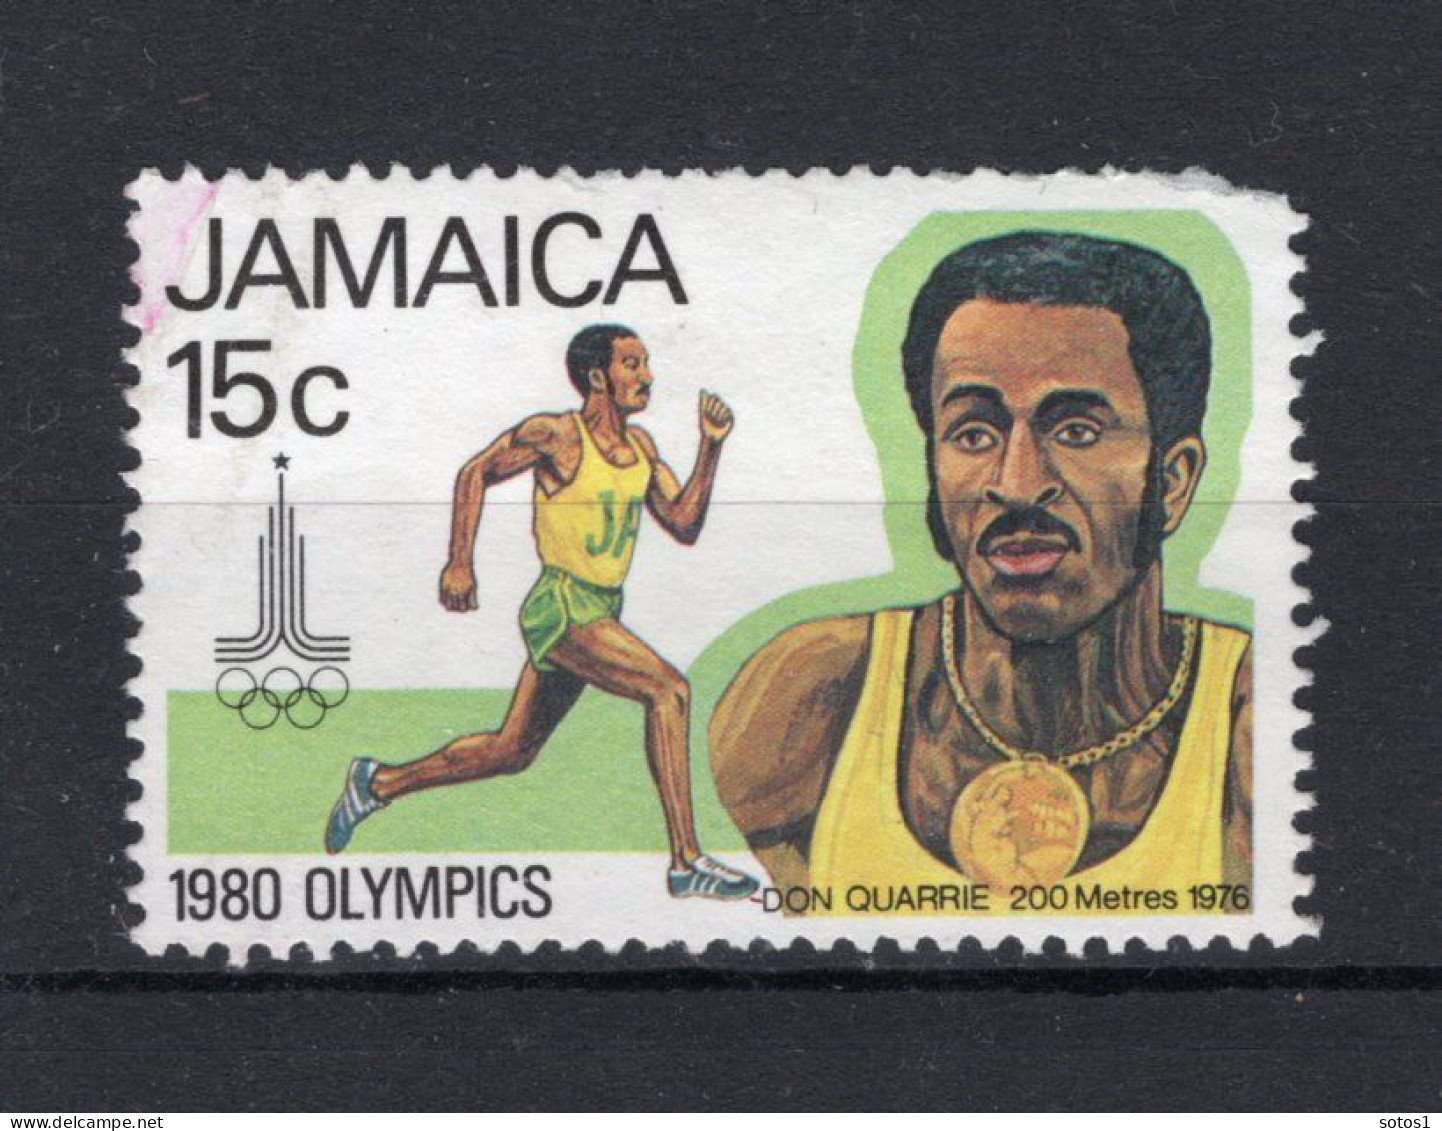 JAMAICA Yt. 495 MH 1980 - Jamaica (1962-...)